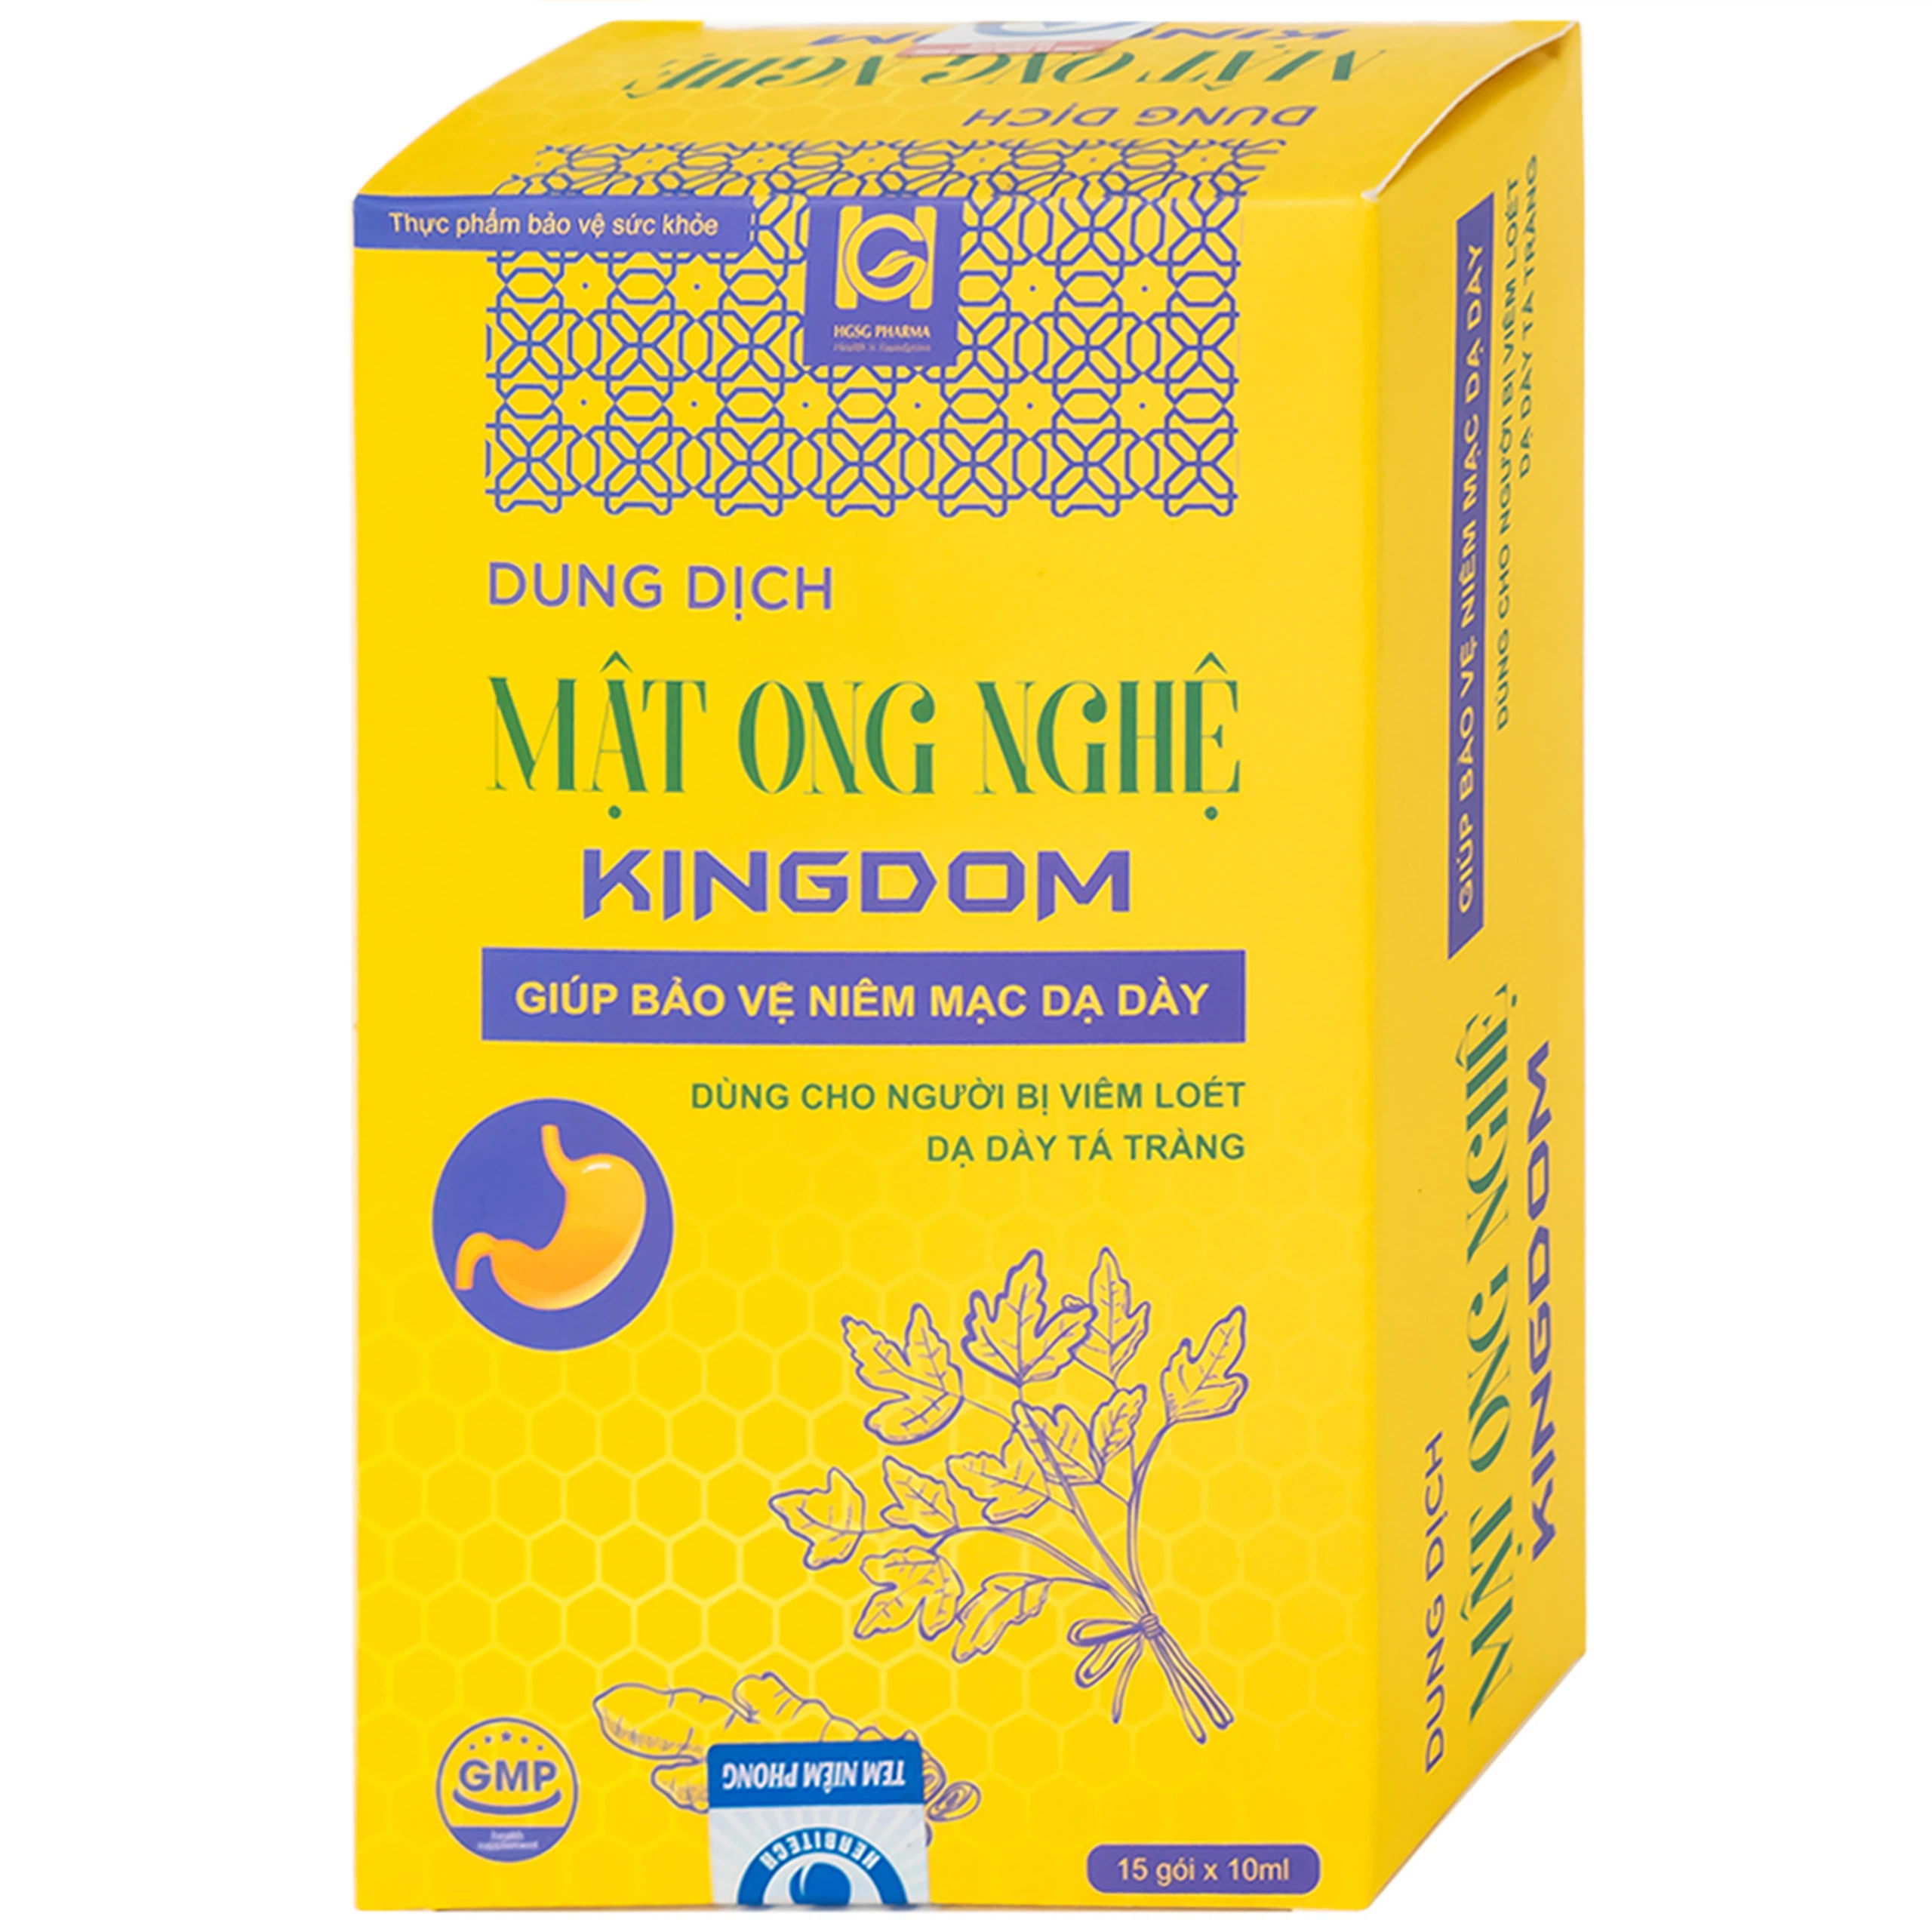 Dung dịch mật ong nghệ Kingdom bảo vệ niêm mạc dạ dày (15 gói x 10ml)